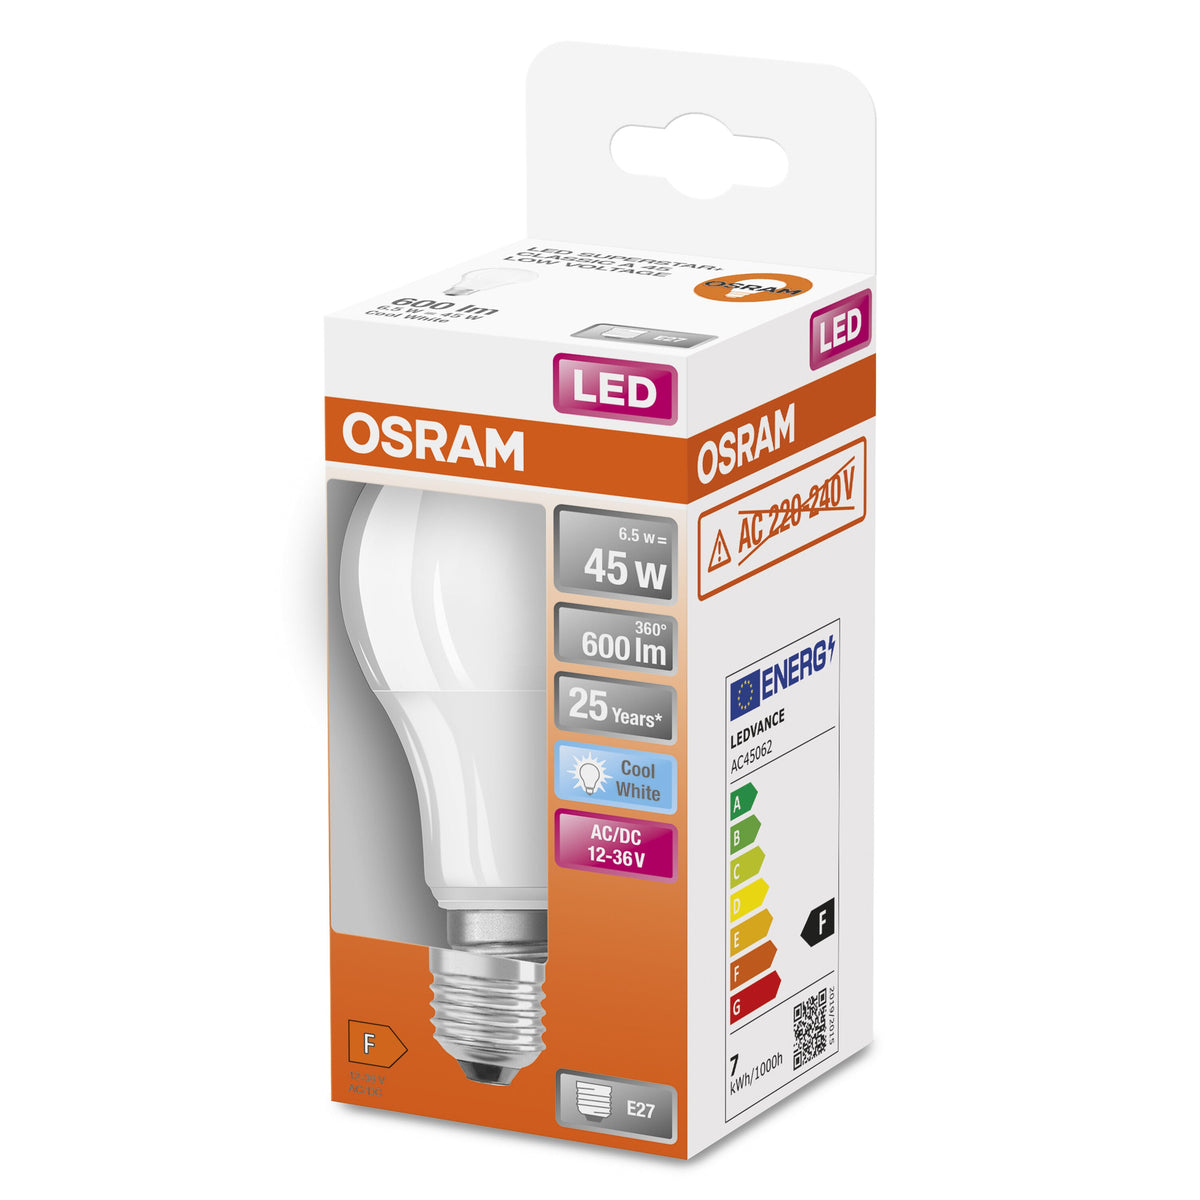 OSRAM Star+ LED-Lampe mit Niedervolt für E27-Sockel, matte Optik ,Kaltweiß (4000K), 600 Lumen, Ersatz für herkömmliche 45W-Leuchtmittel, nicht dimmbar, 1-er Pack